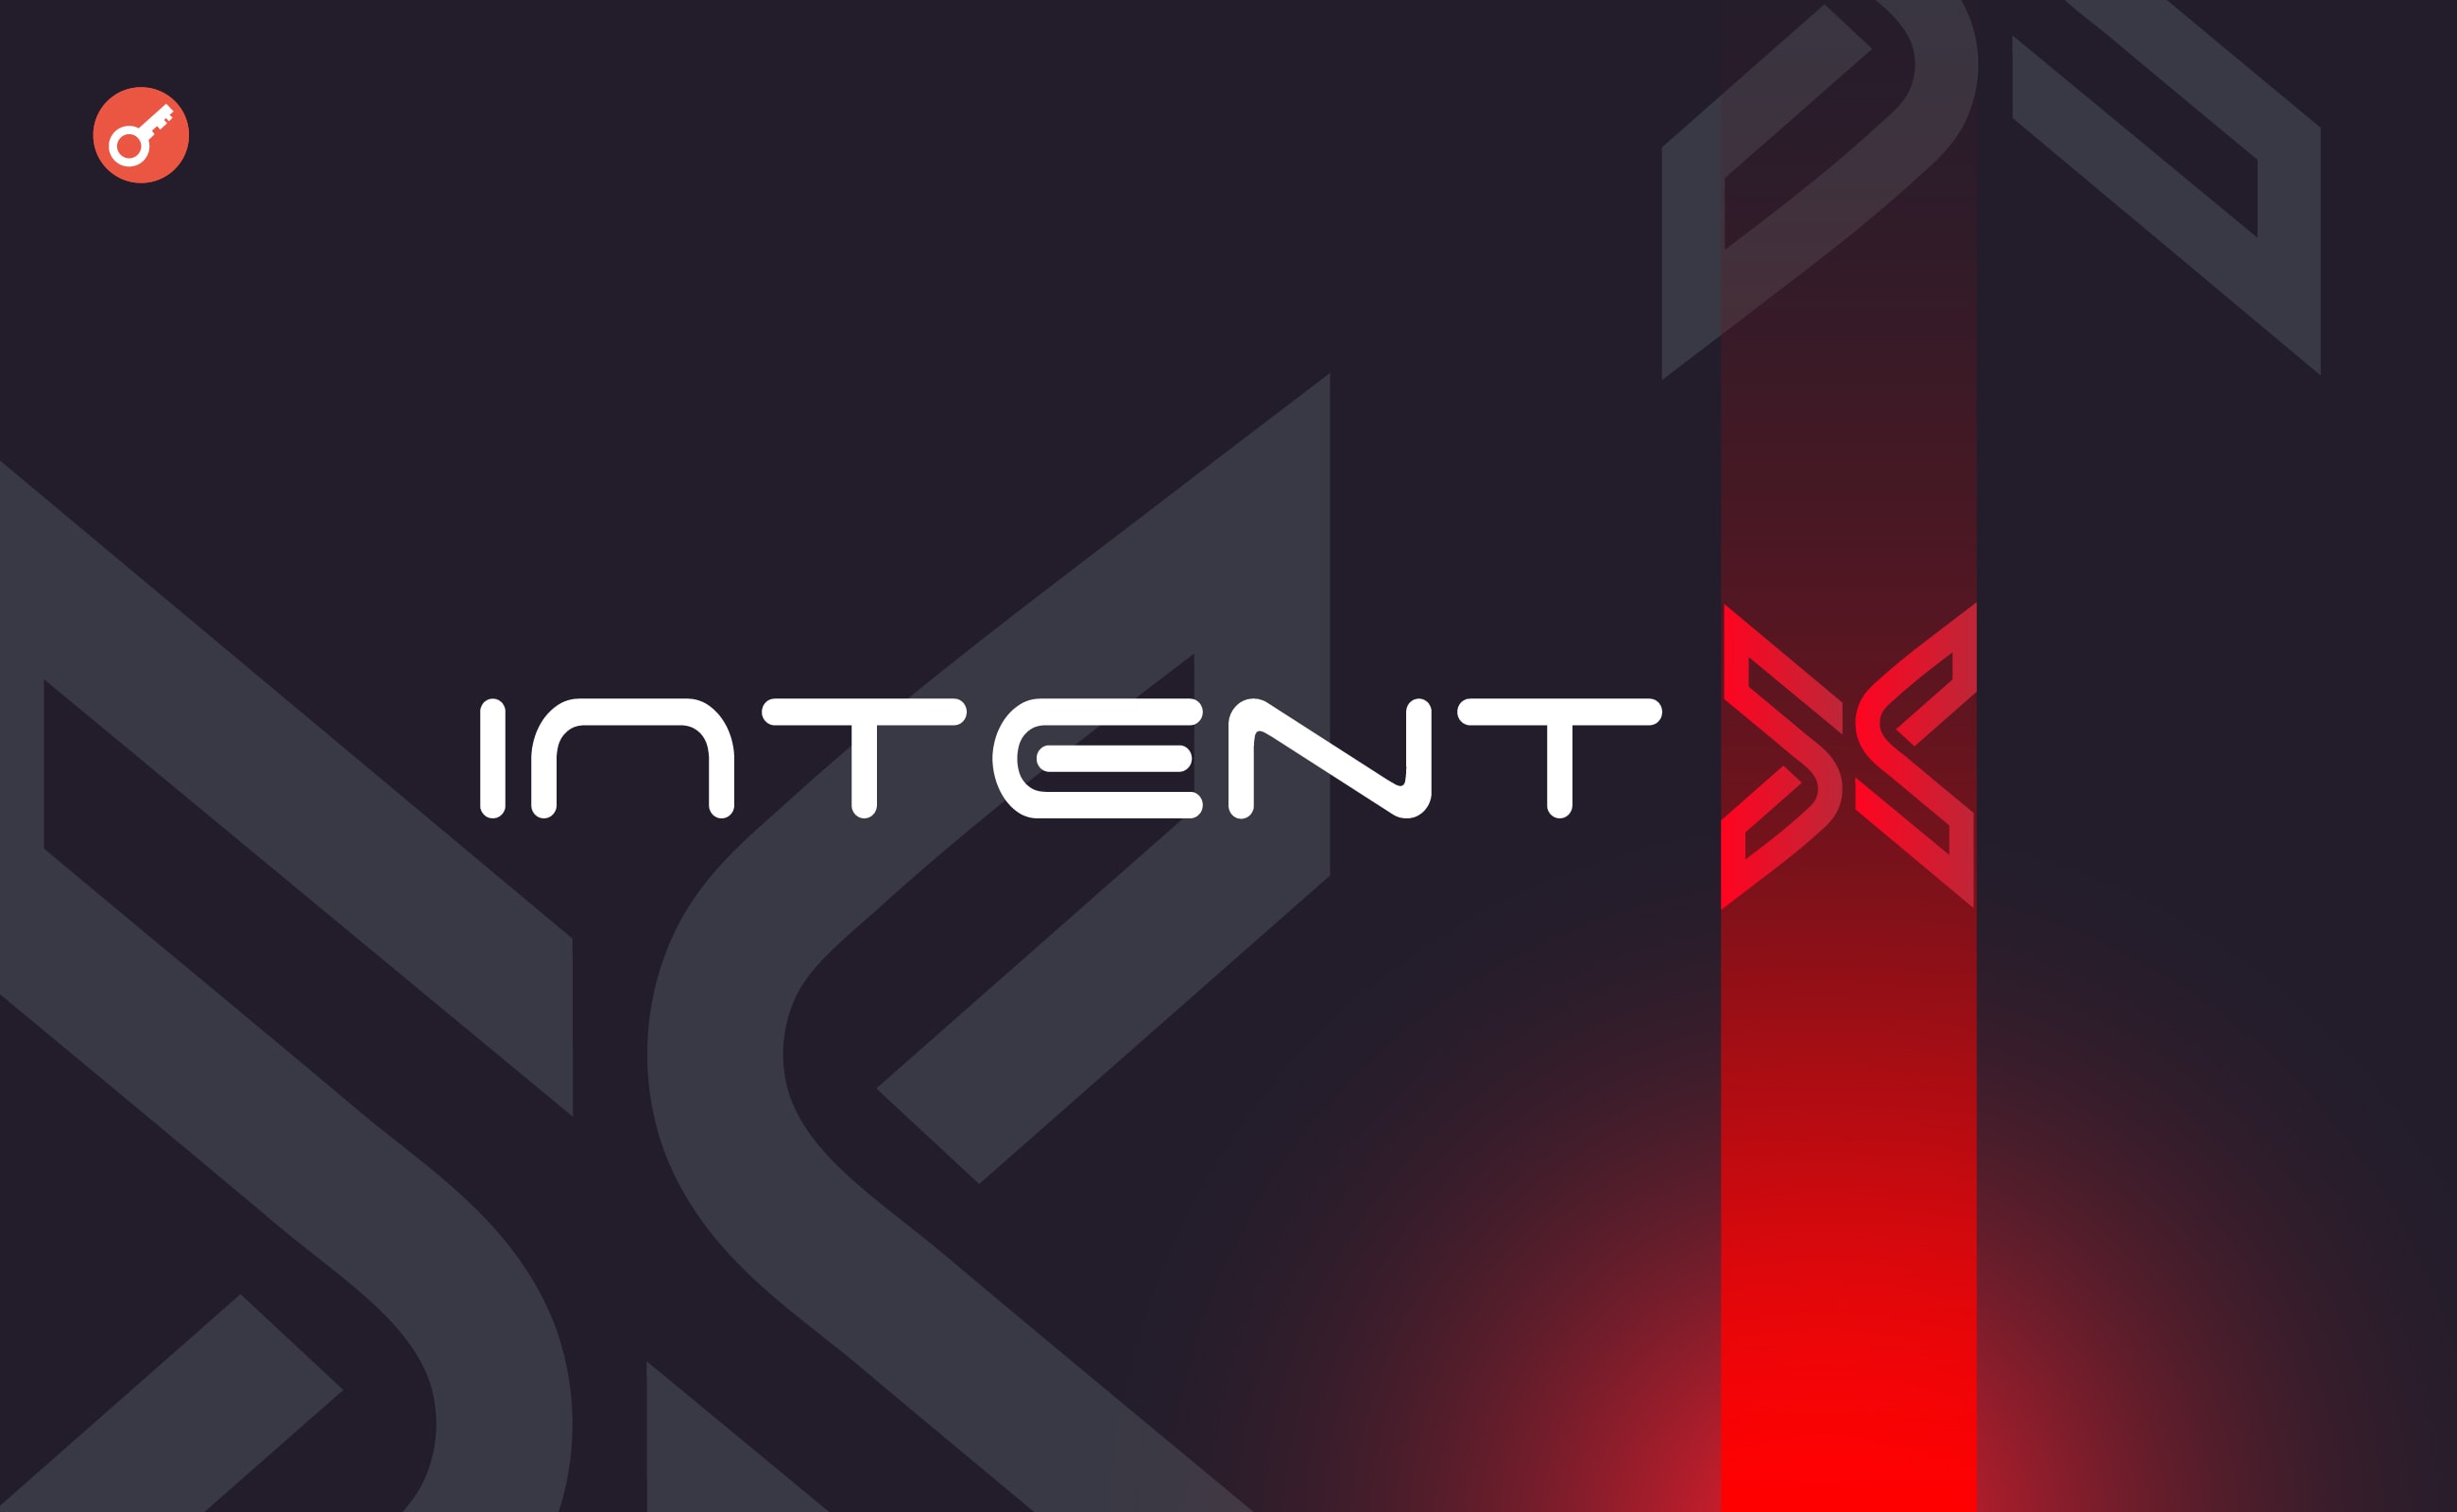 IntentX привлекла $1,8 млн инвестиций. Заглавный коллаж новости.